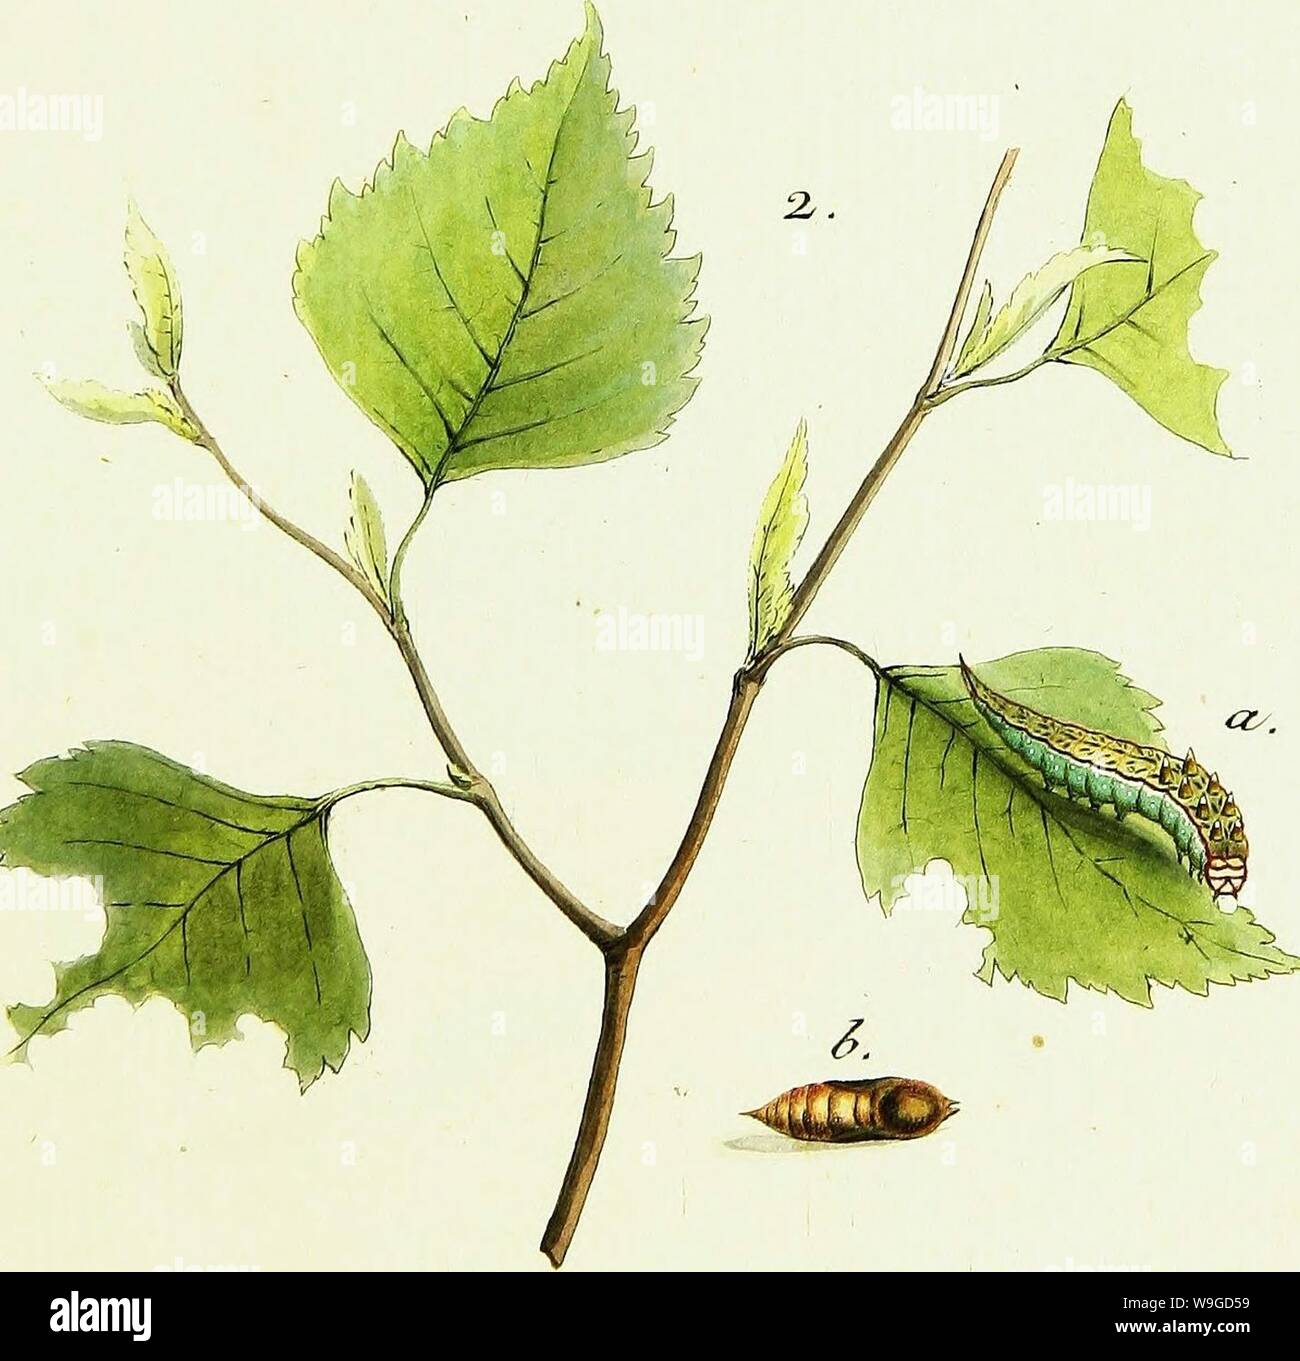 Archiv Bild von Seite 186 / europäischer Schmetterlinge (1806). / Europäischer Schmetterlinge CUbiodiversity 1742385-9607 Jahr: 1806 (a,. l&gt;. C'K?r/TA/&, a. 6. CJ üx & das Stockfoto